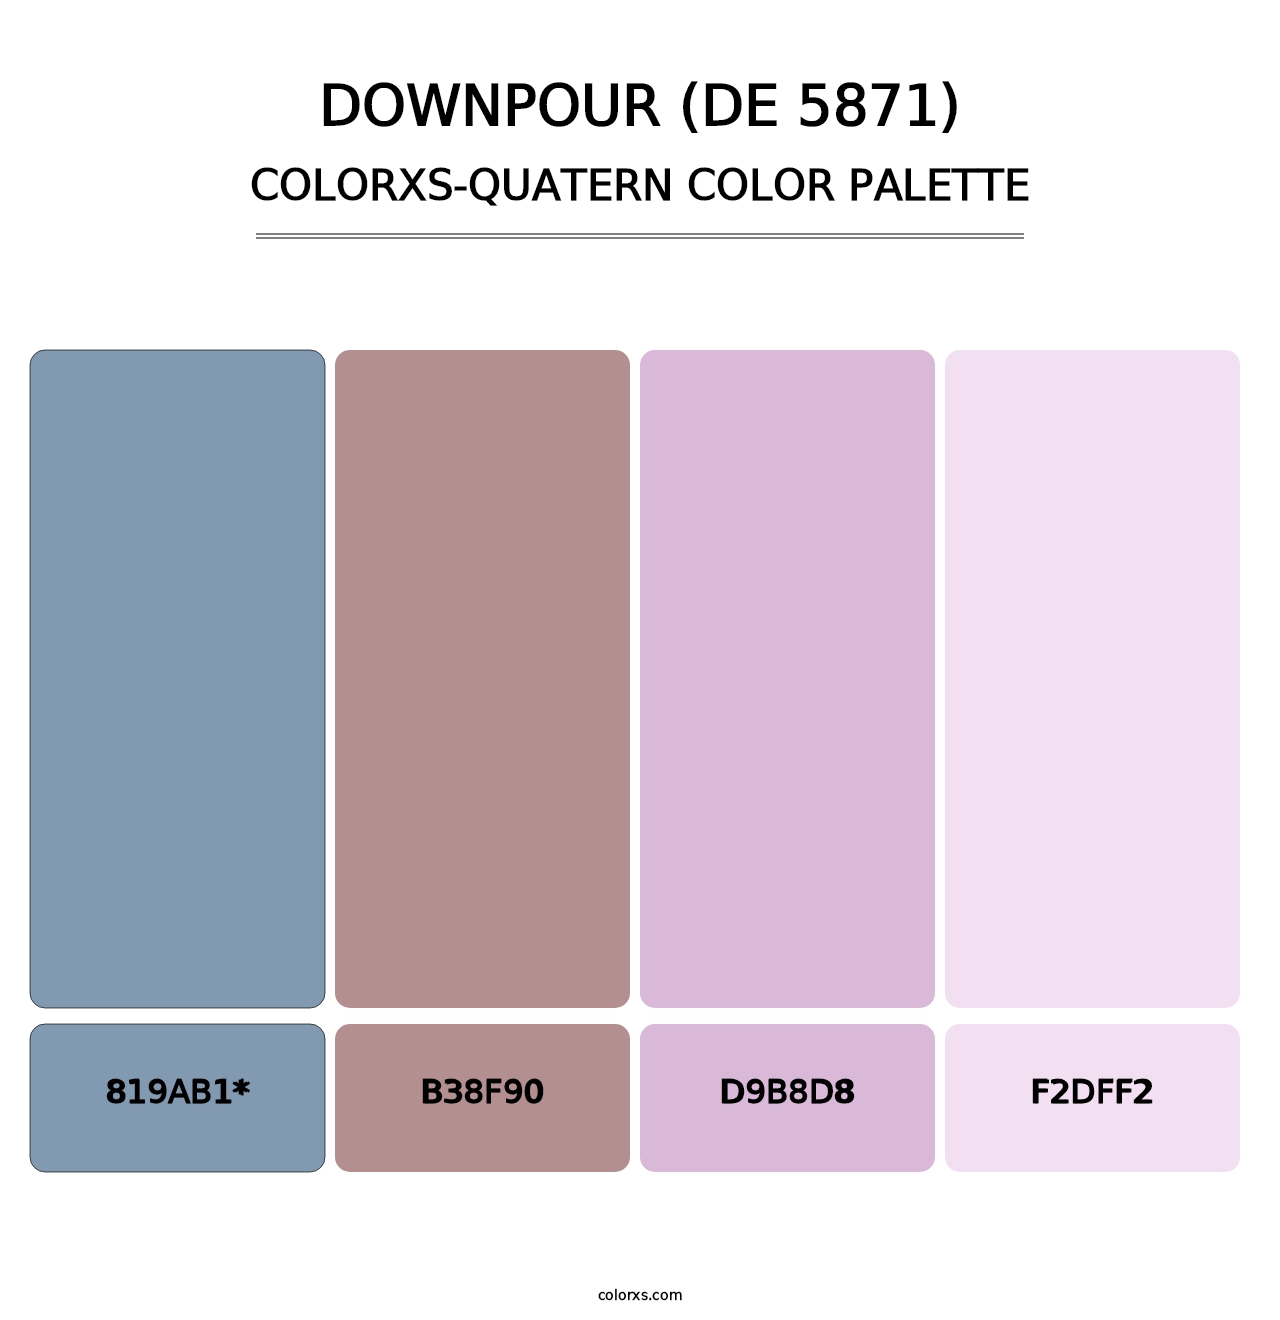 Downpour (DE 5871) - Colorxs Quatern Palette